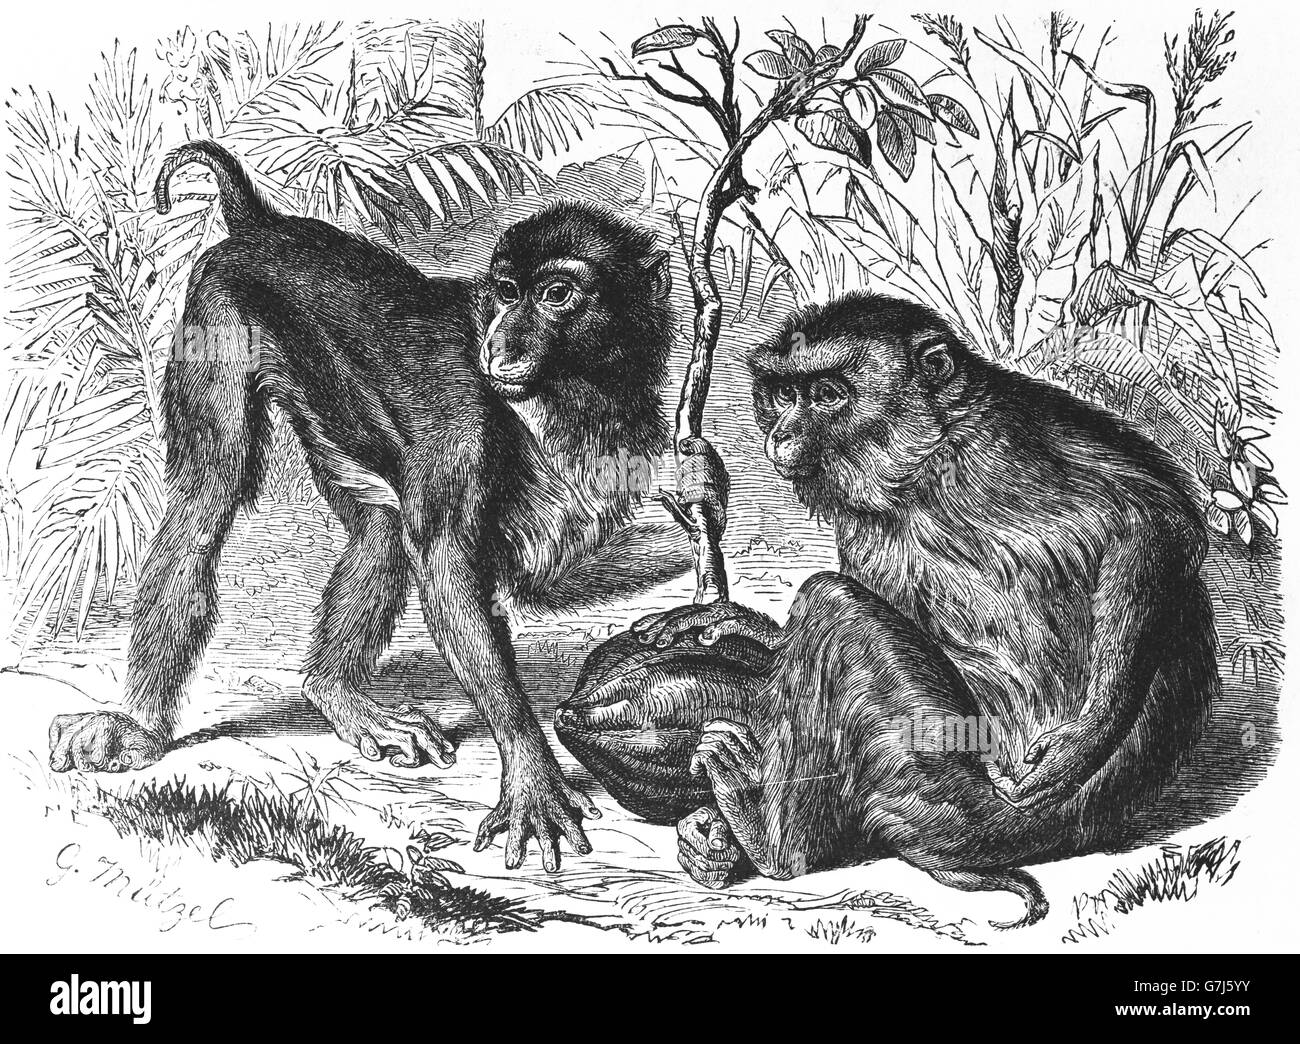 Southern pig-coda macaque, Macaca nemestrina, scimmia del Vecchio Mondo, Cercopithecidae, illustrazione dal libro datato 1904 Foto Stock